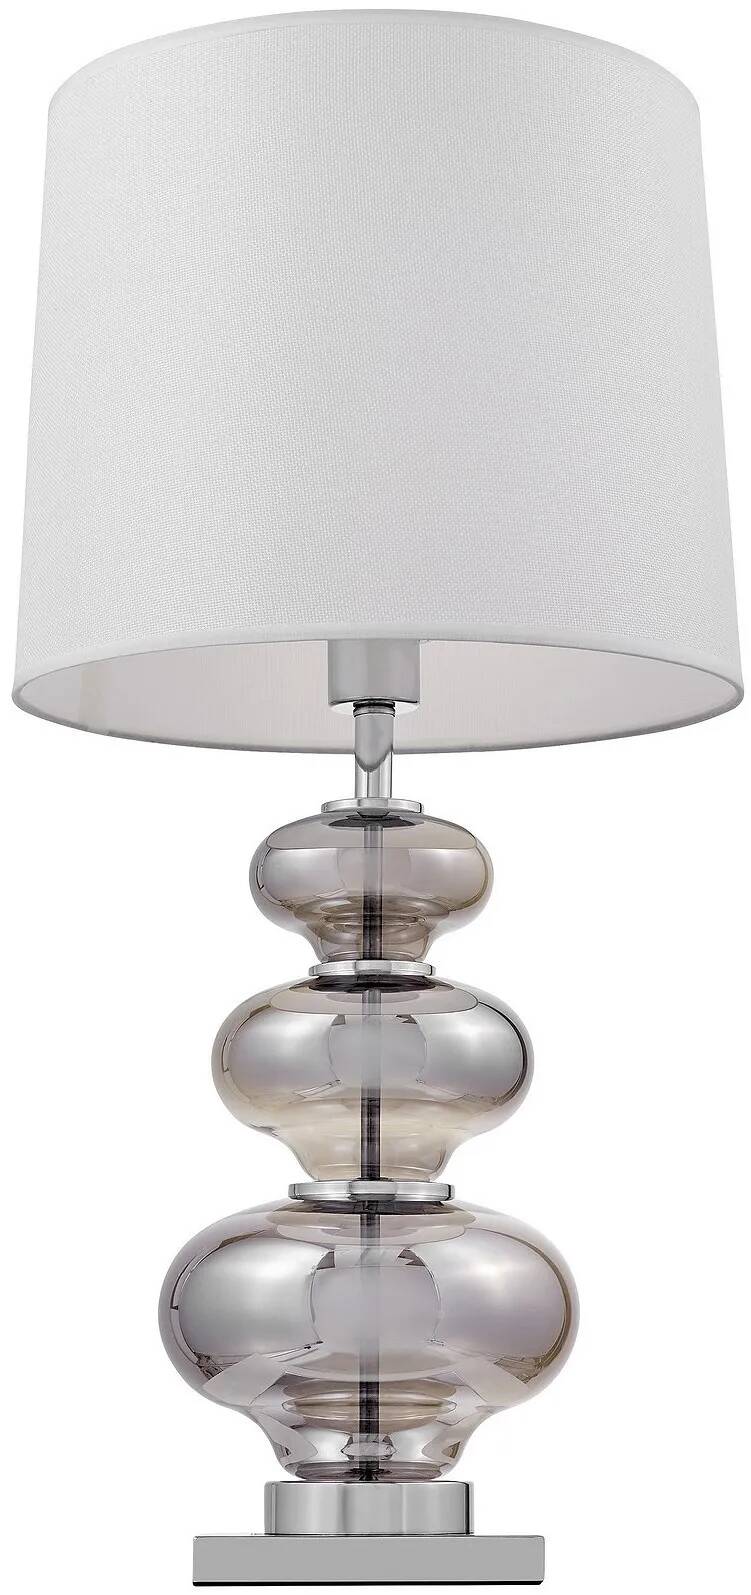 Lampe de table en tissu blanc et verre argenté